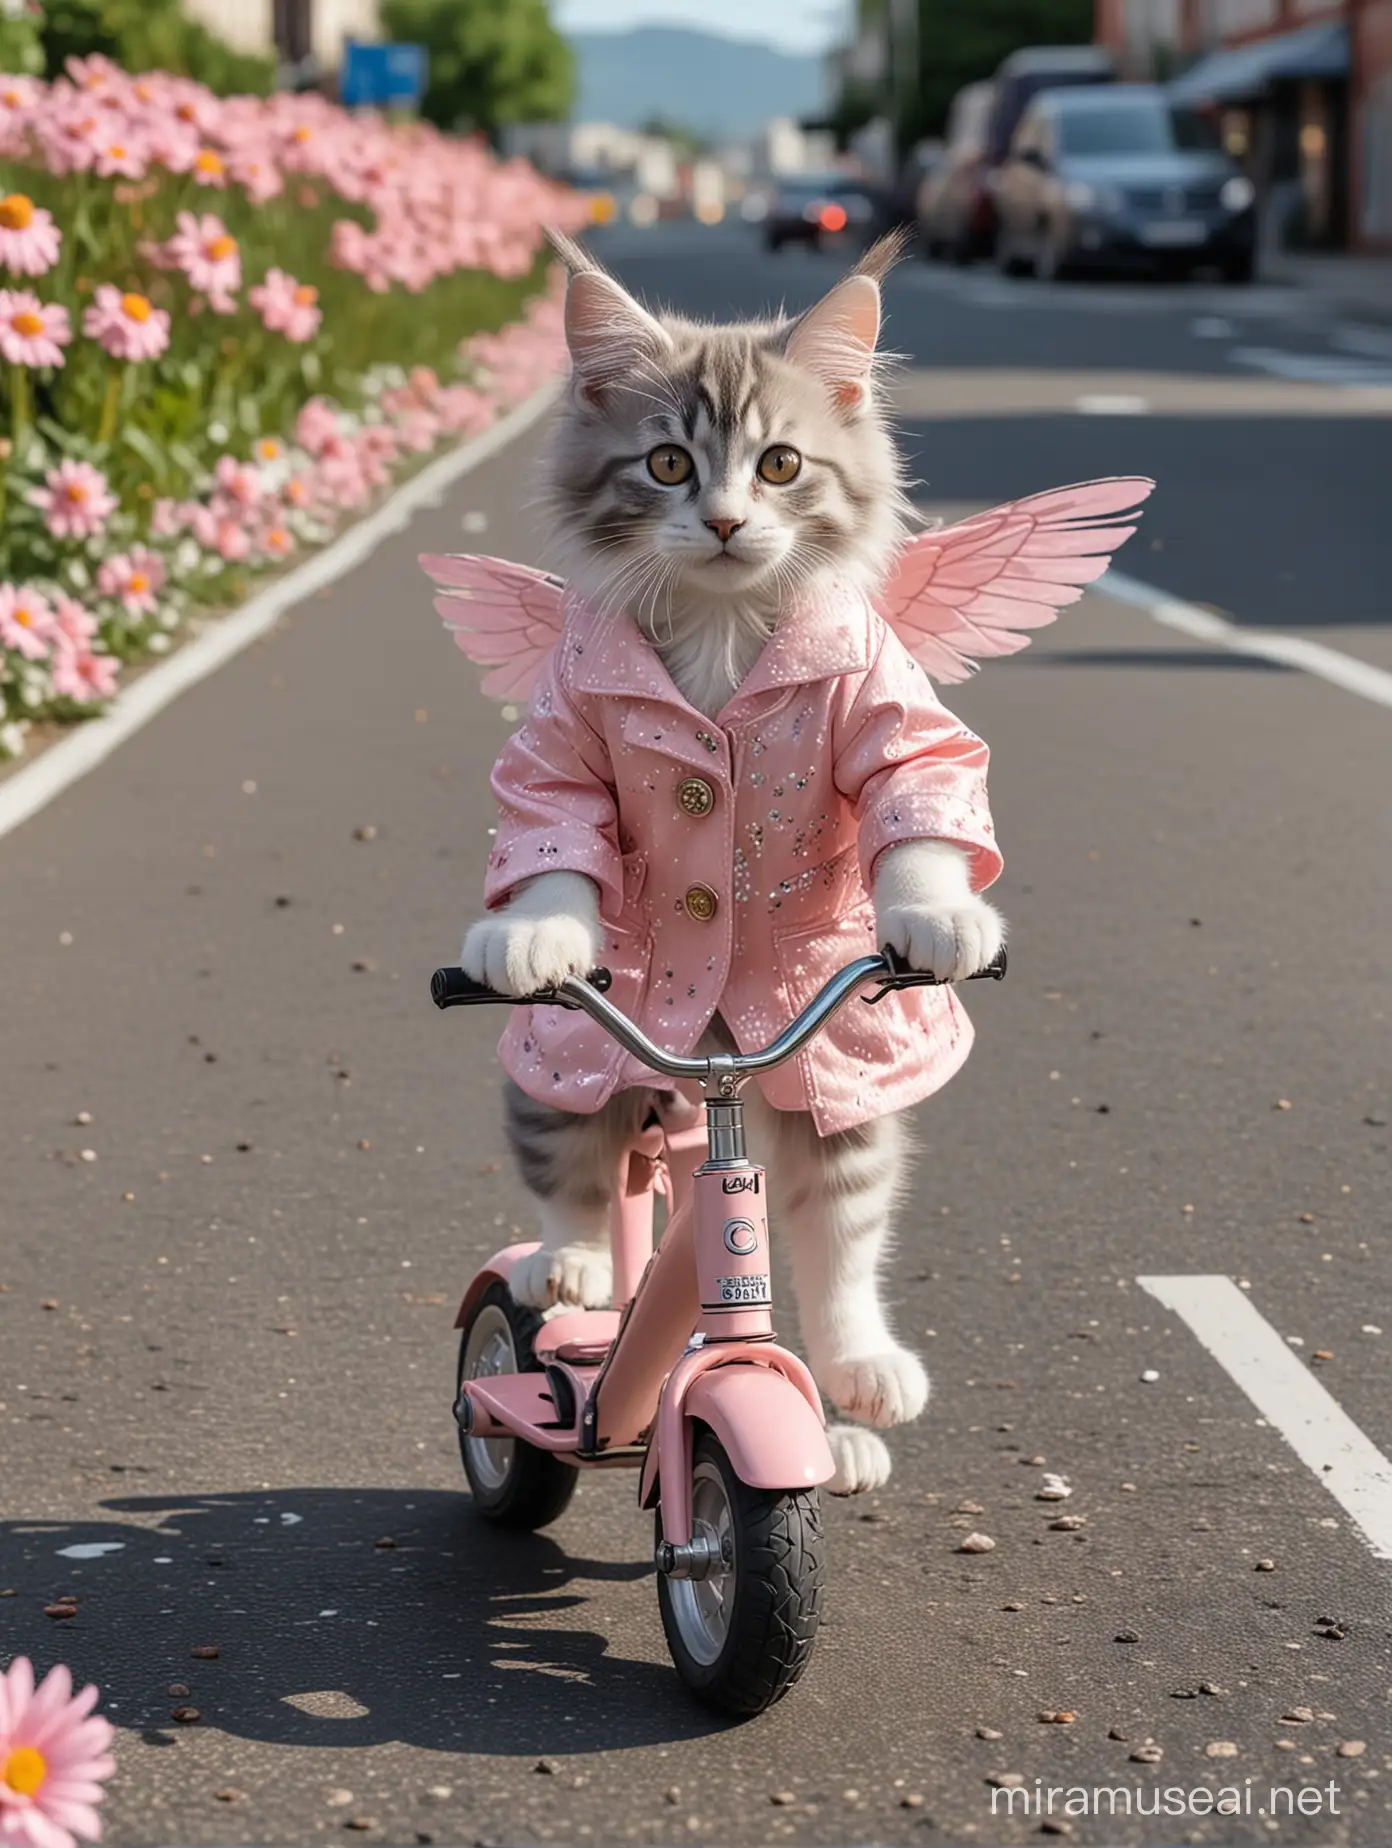 视图中,拟人化的可爱的灰白色缅因小猫咪的形象，精灵翅膀，马路上，走在班马线上，穿着香奈儿杏色套装，脚上穿着圆头玛丽简鞋，斜挂香奈儿小包，手拿一束粉色大丽花，骑电动自行车，城市较远背景，照片逼真，超细节，超细节，4k, 8k——ar 3:4——v 6.0
